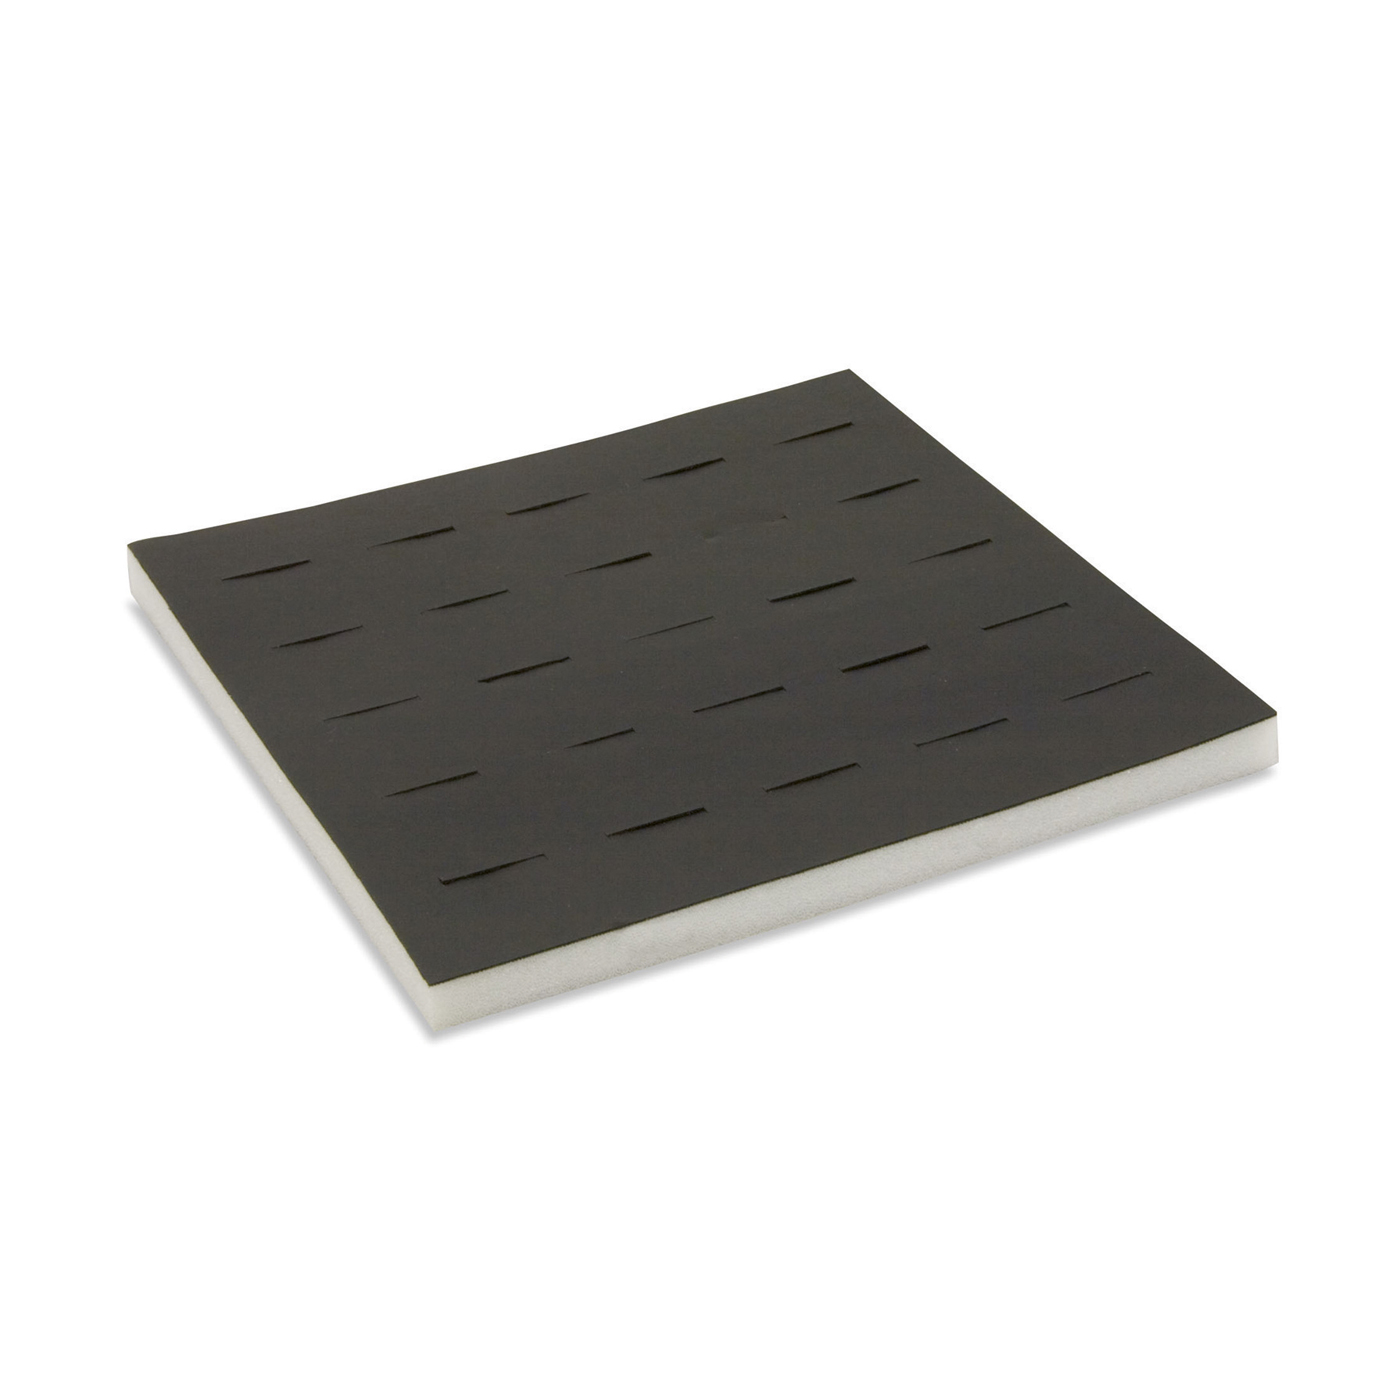 Tray System Einlage, schwarz, für 25 Ringe, 224 x 224 mm - 1 Stück